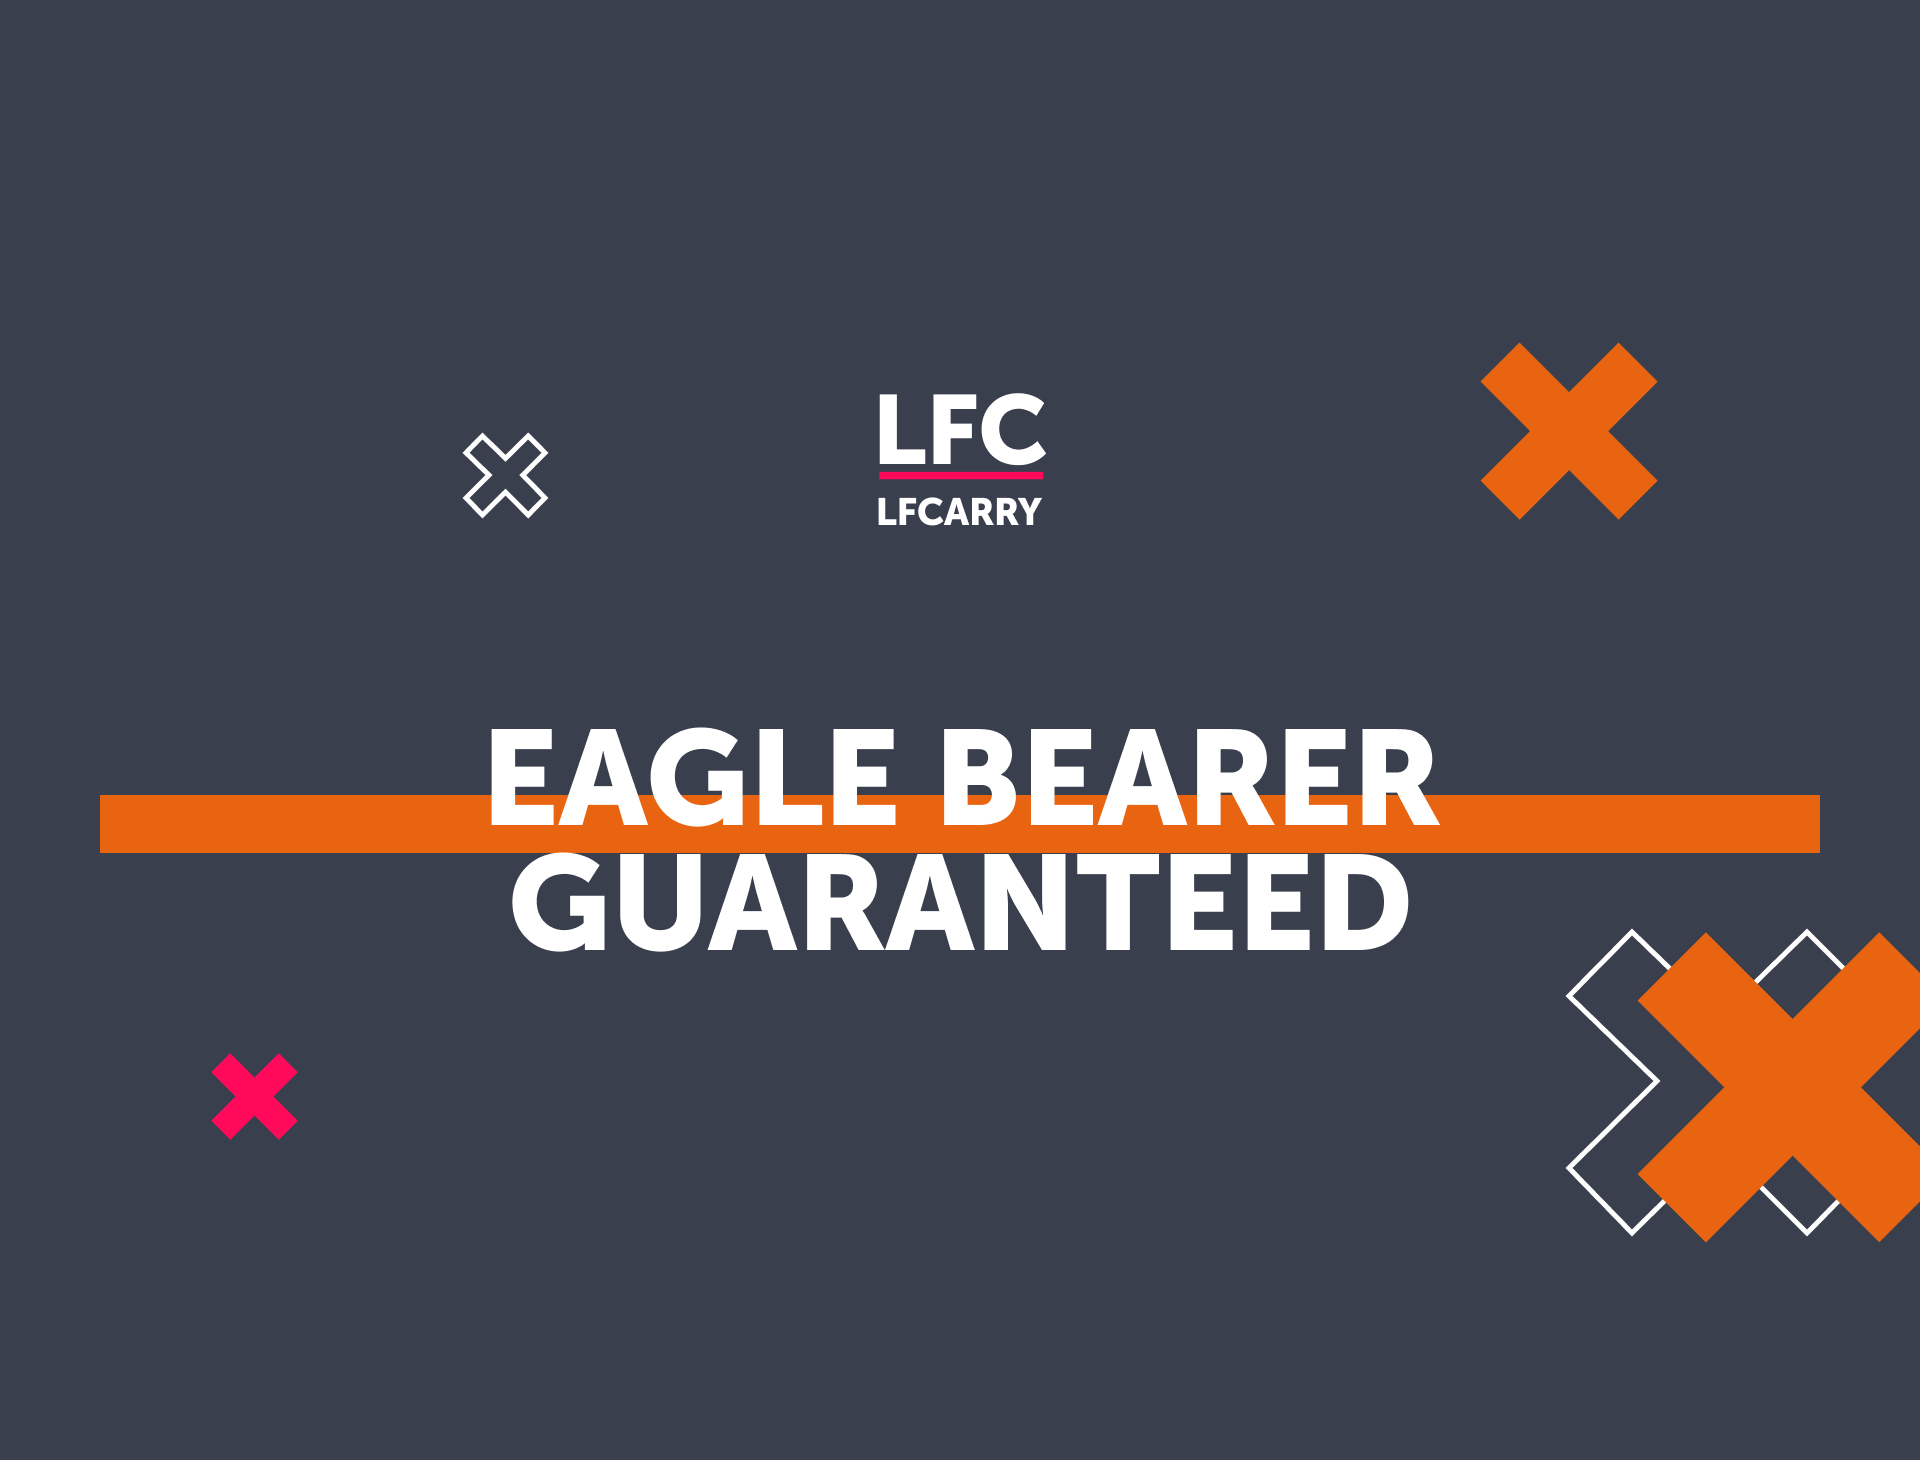 Eagle Bearer Guaranteed